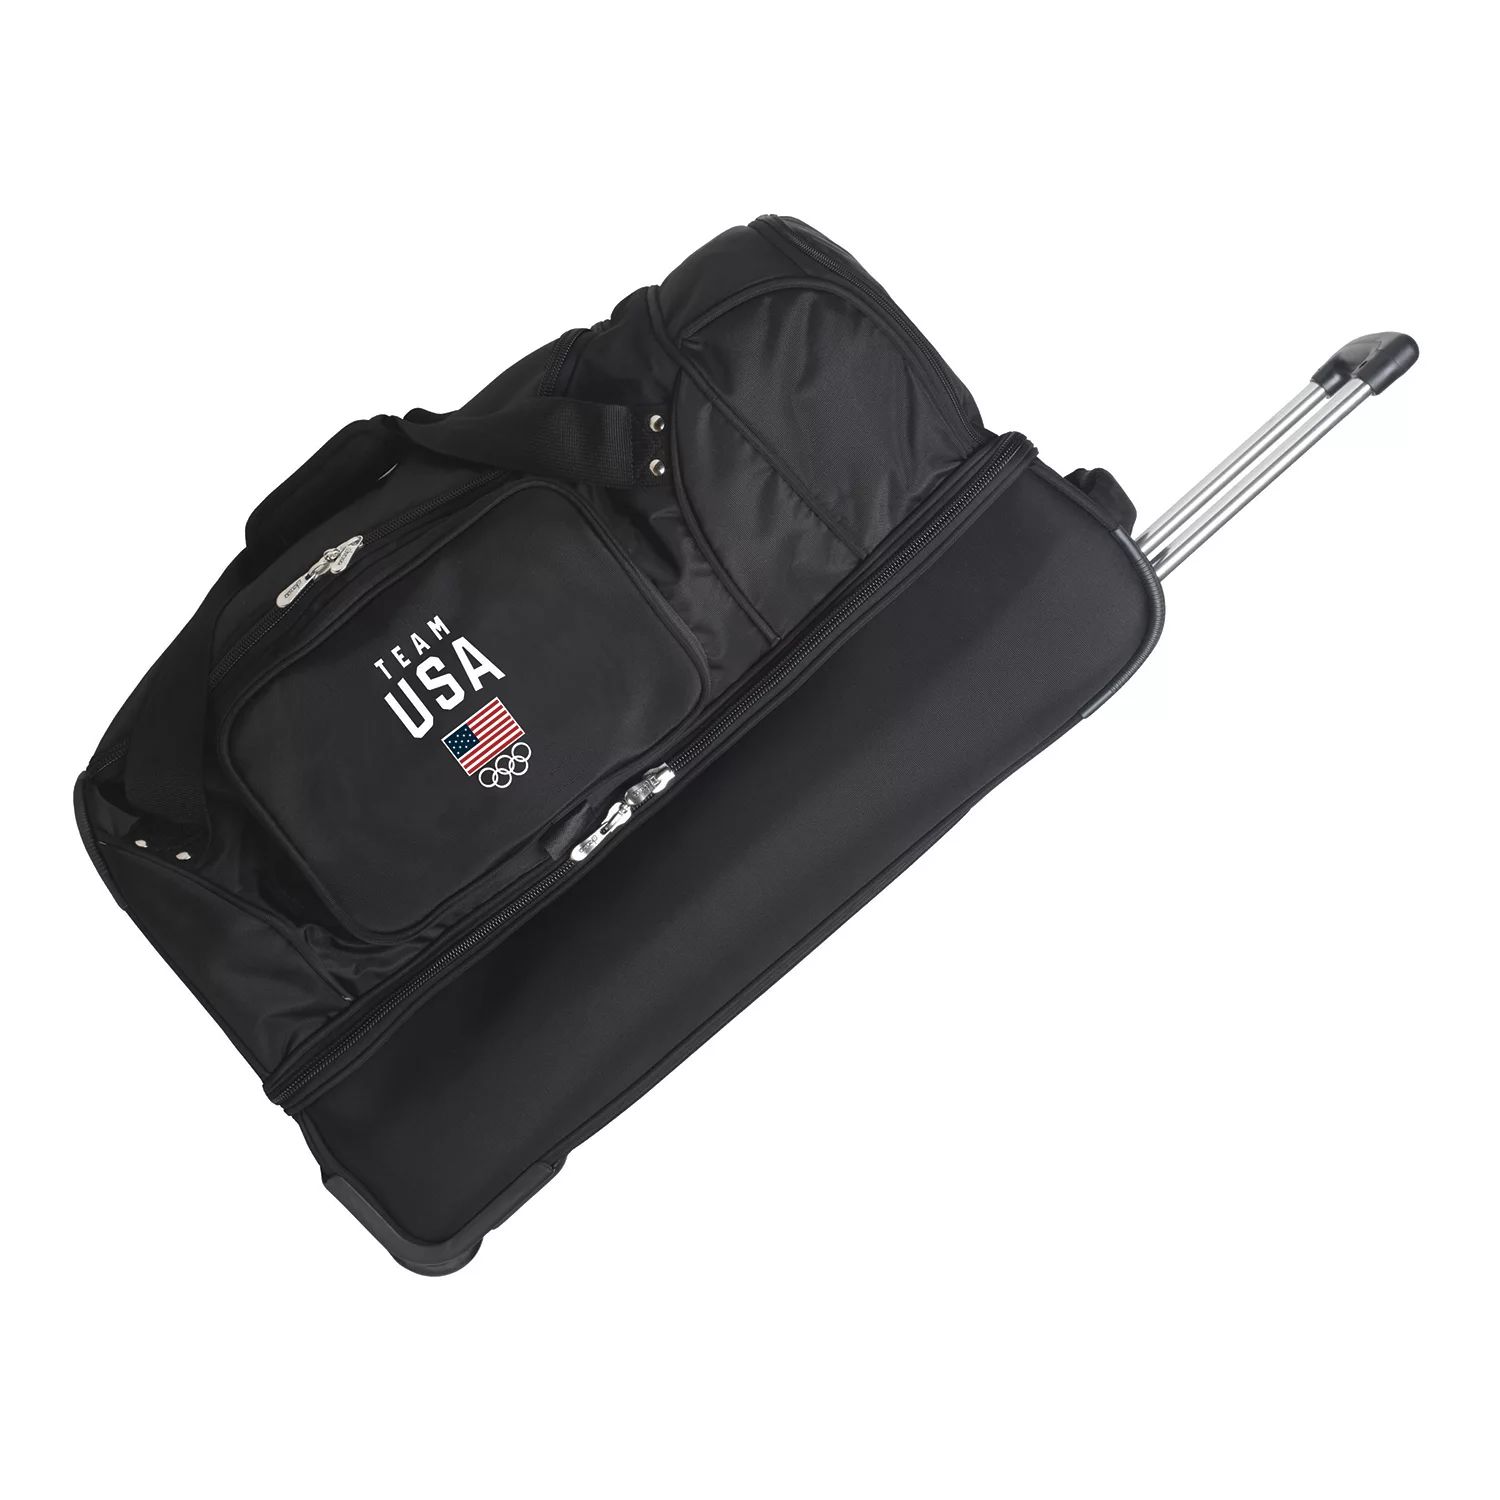 цена Спортивная сумка Denco с откидным дном, 27 дюймов, олимпийская сборная США Denco